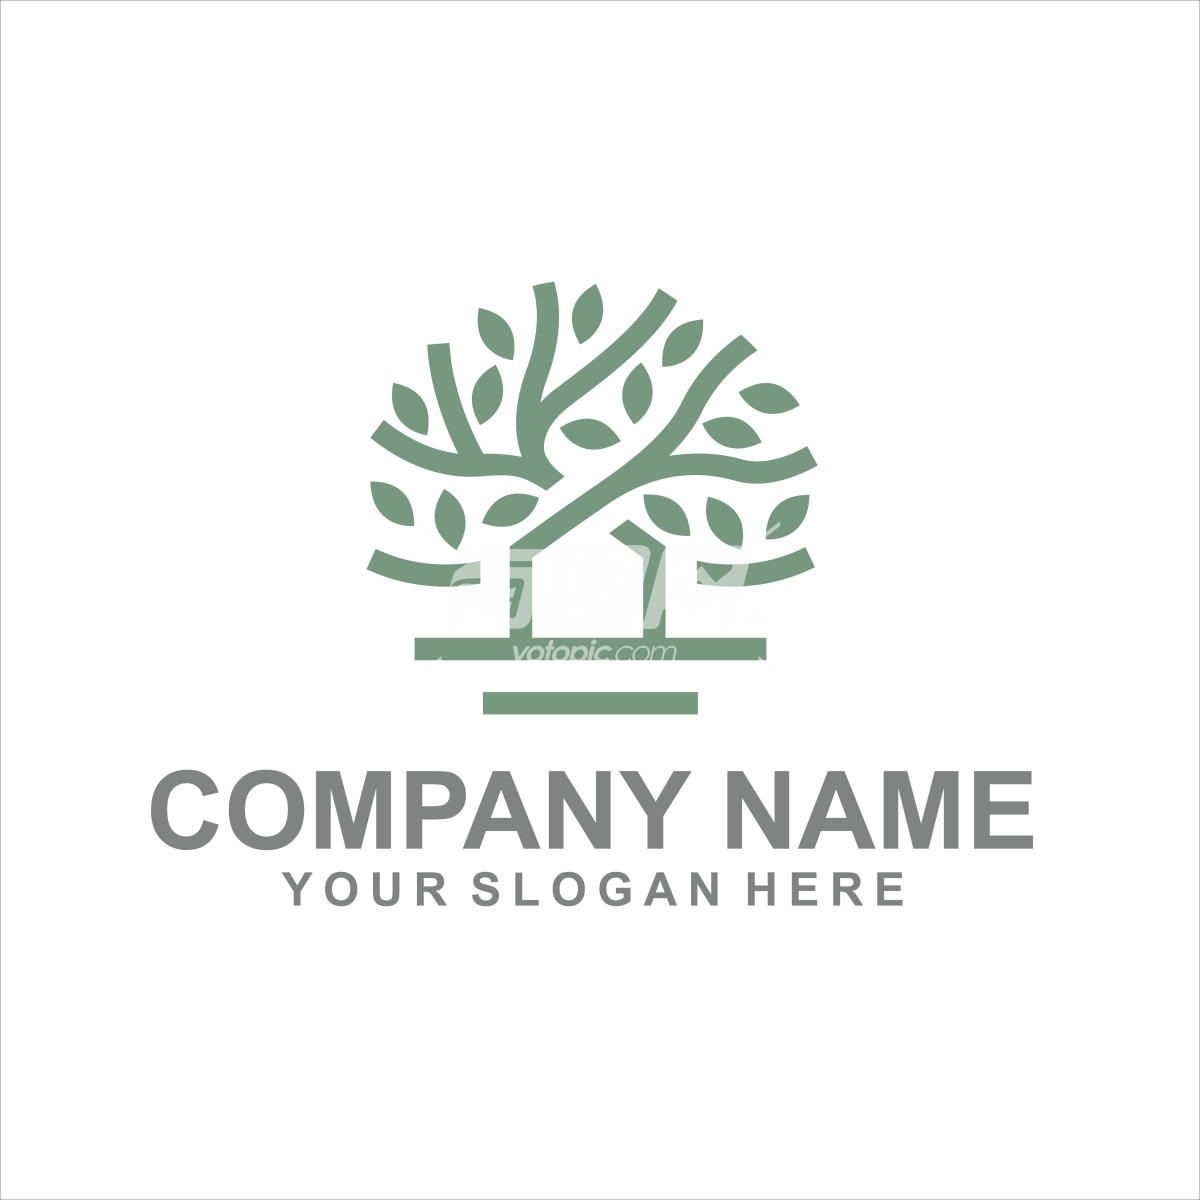 林绿化公司logo设计